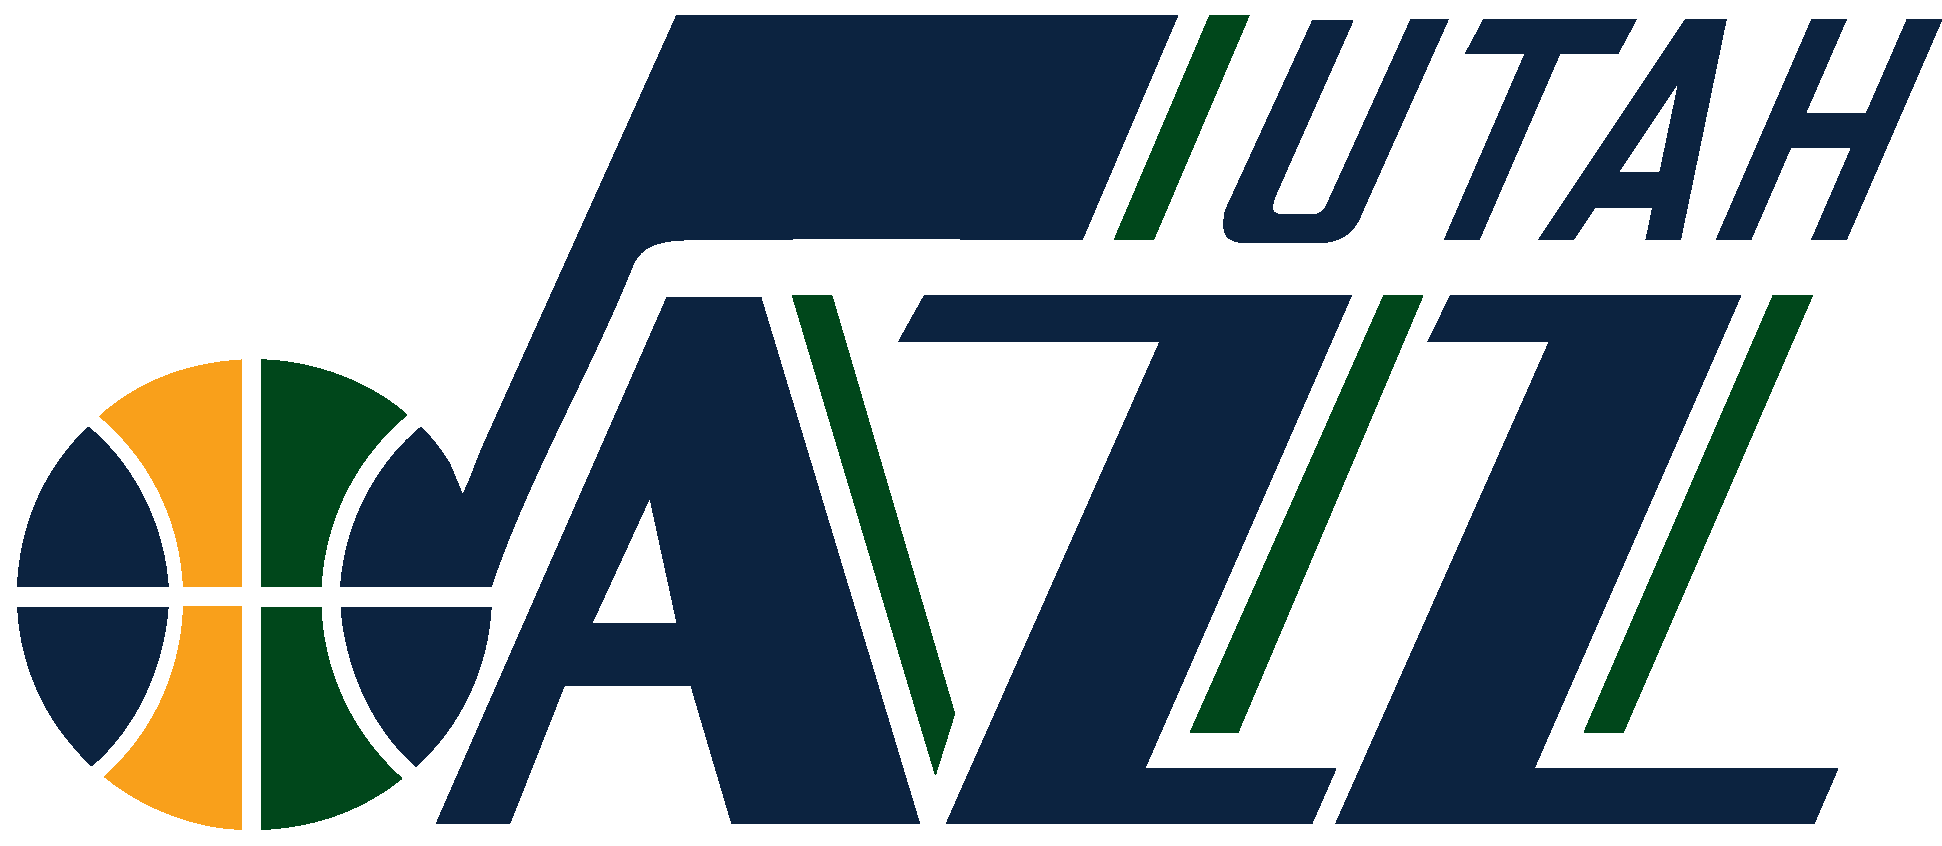 Utah Jazz Logo (NBA) Download Vector